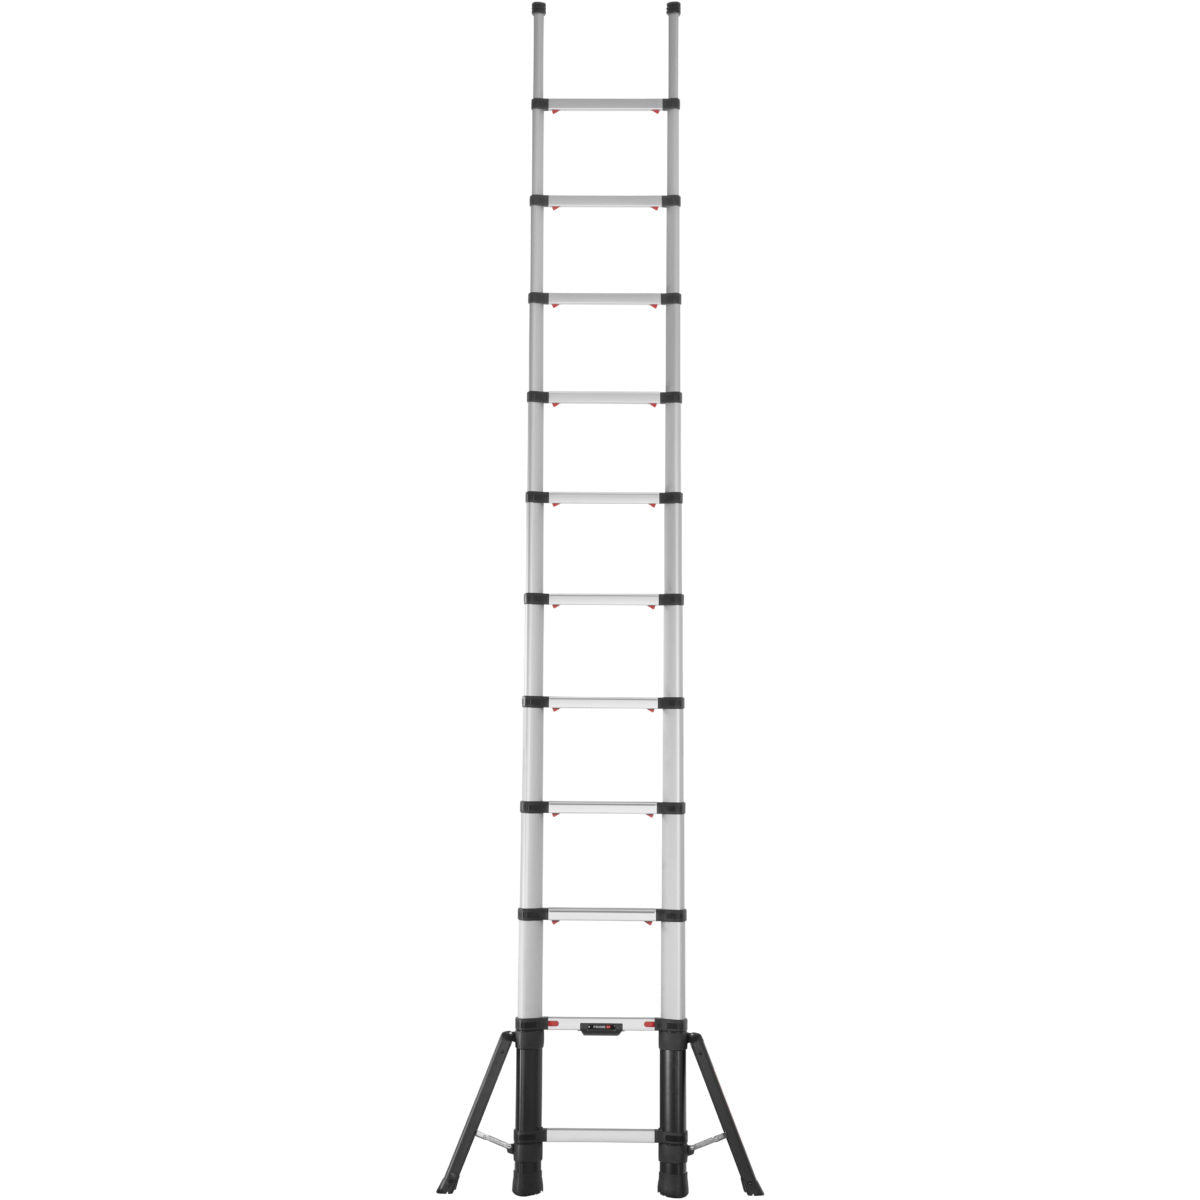 Telesteps Prime Telescopic Ladder With Stabiliser Legs 